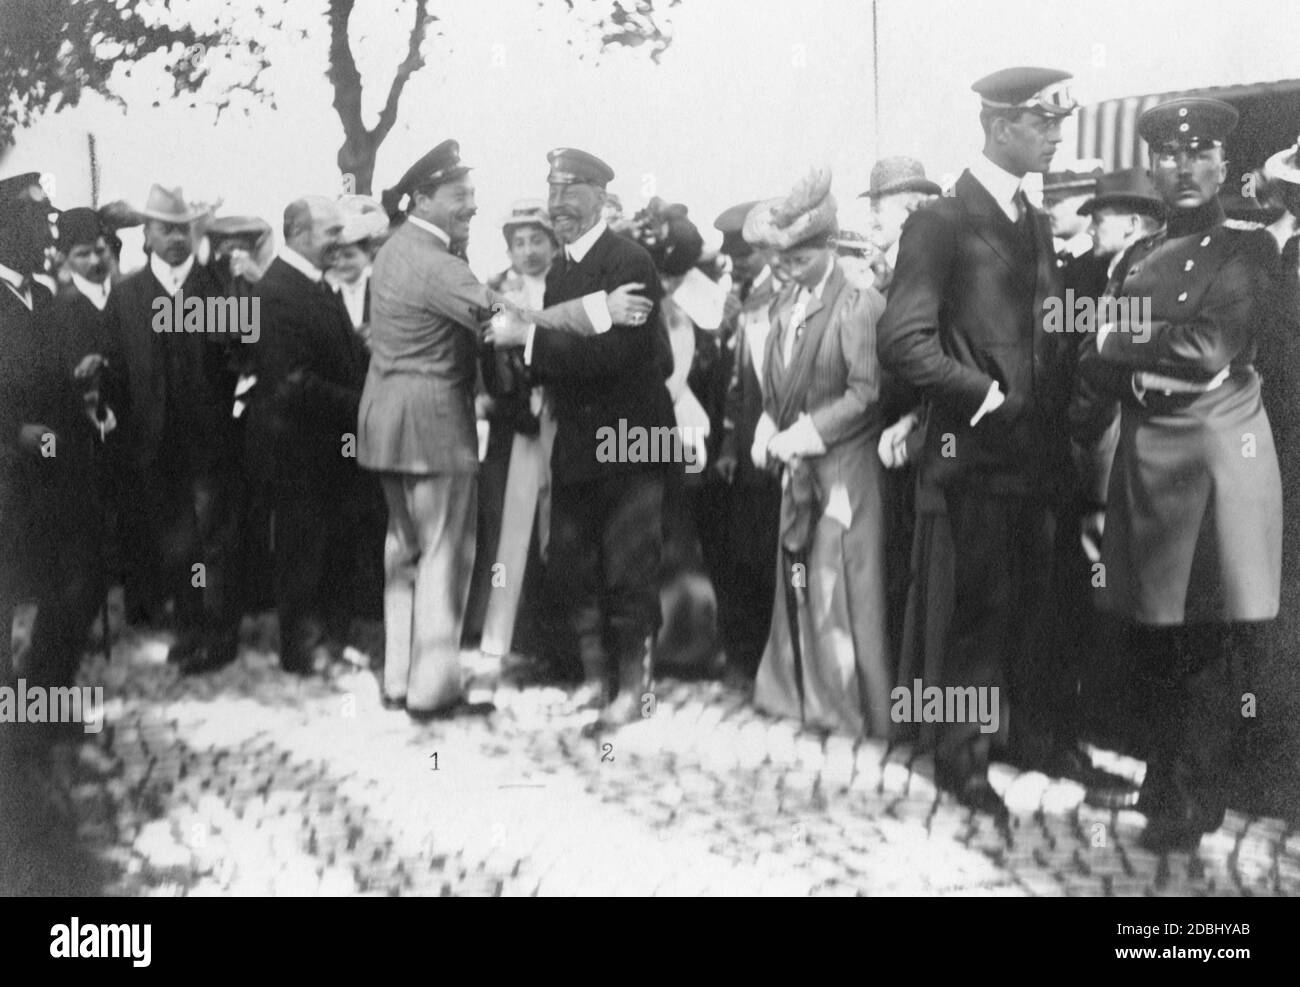 Il Granduca Ernest Luigi d'Assia-Darmstadt (centro a sinistra) e il Principe Enrico di Prussia (centro a destra) si abbracciano e si salutano a vicenda. Si trovano sulla Hanauer Landstrasse di Francoforte sul meno, al termine del terzo concorso Herkomer, che si è concluso il 13 giugno 1907. Foto Stock